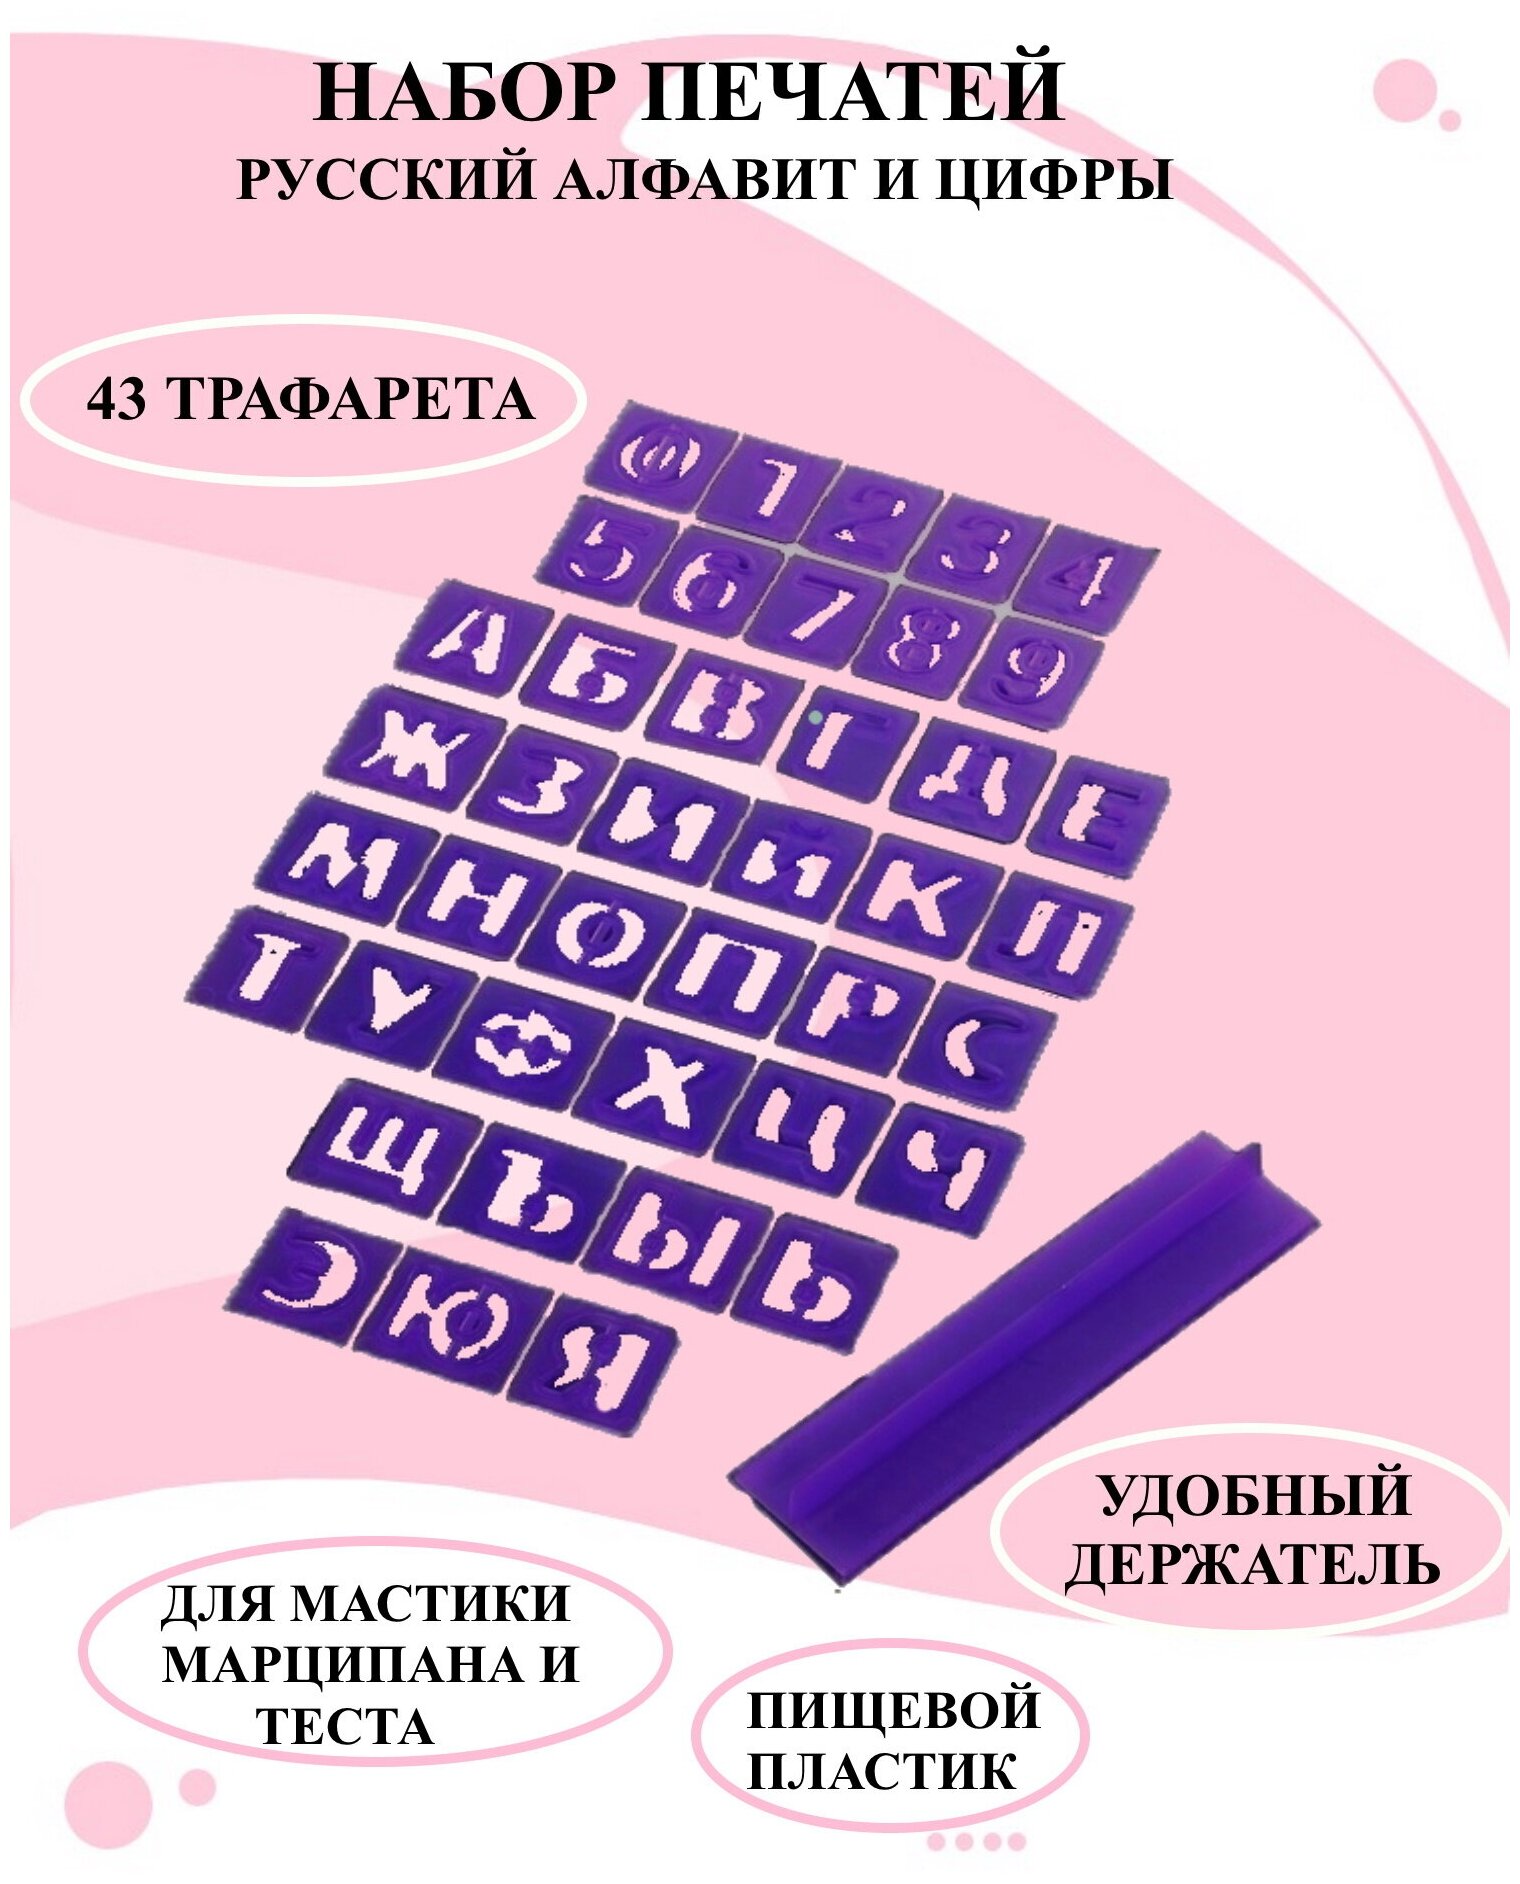 Набор печатей с держателем для марципана русский алфавит и цифры набор трафаретов для мастики и теста.